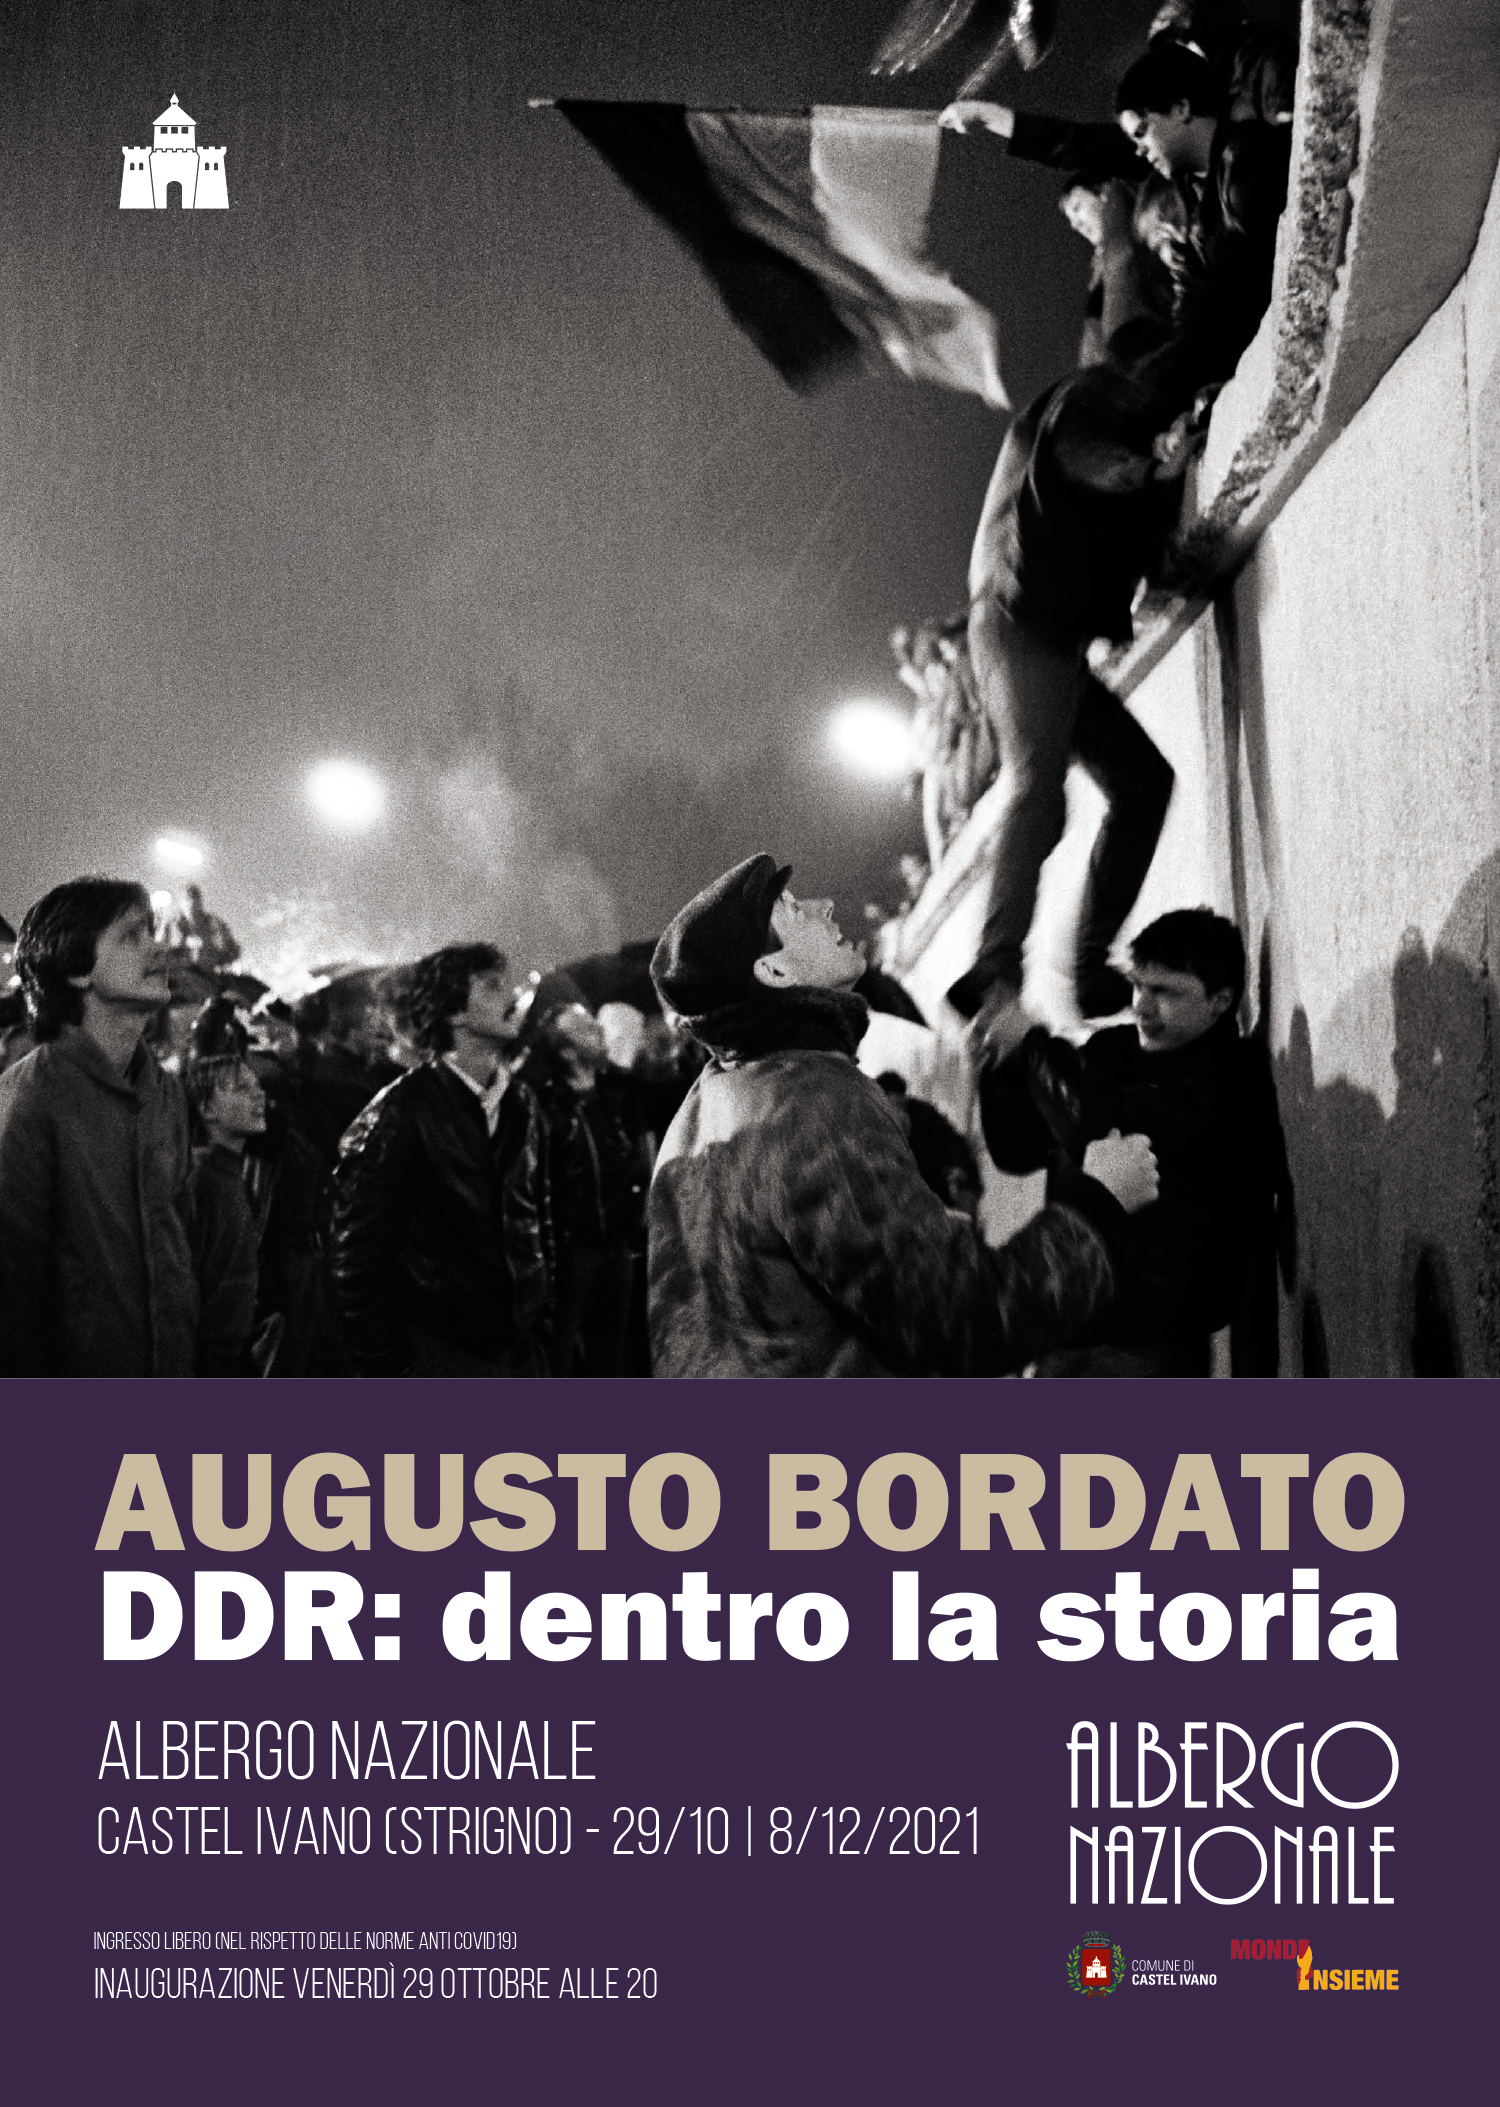 Augusto Bordato. DDR: dentro la storia